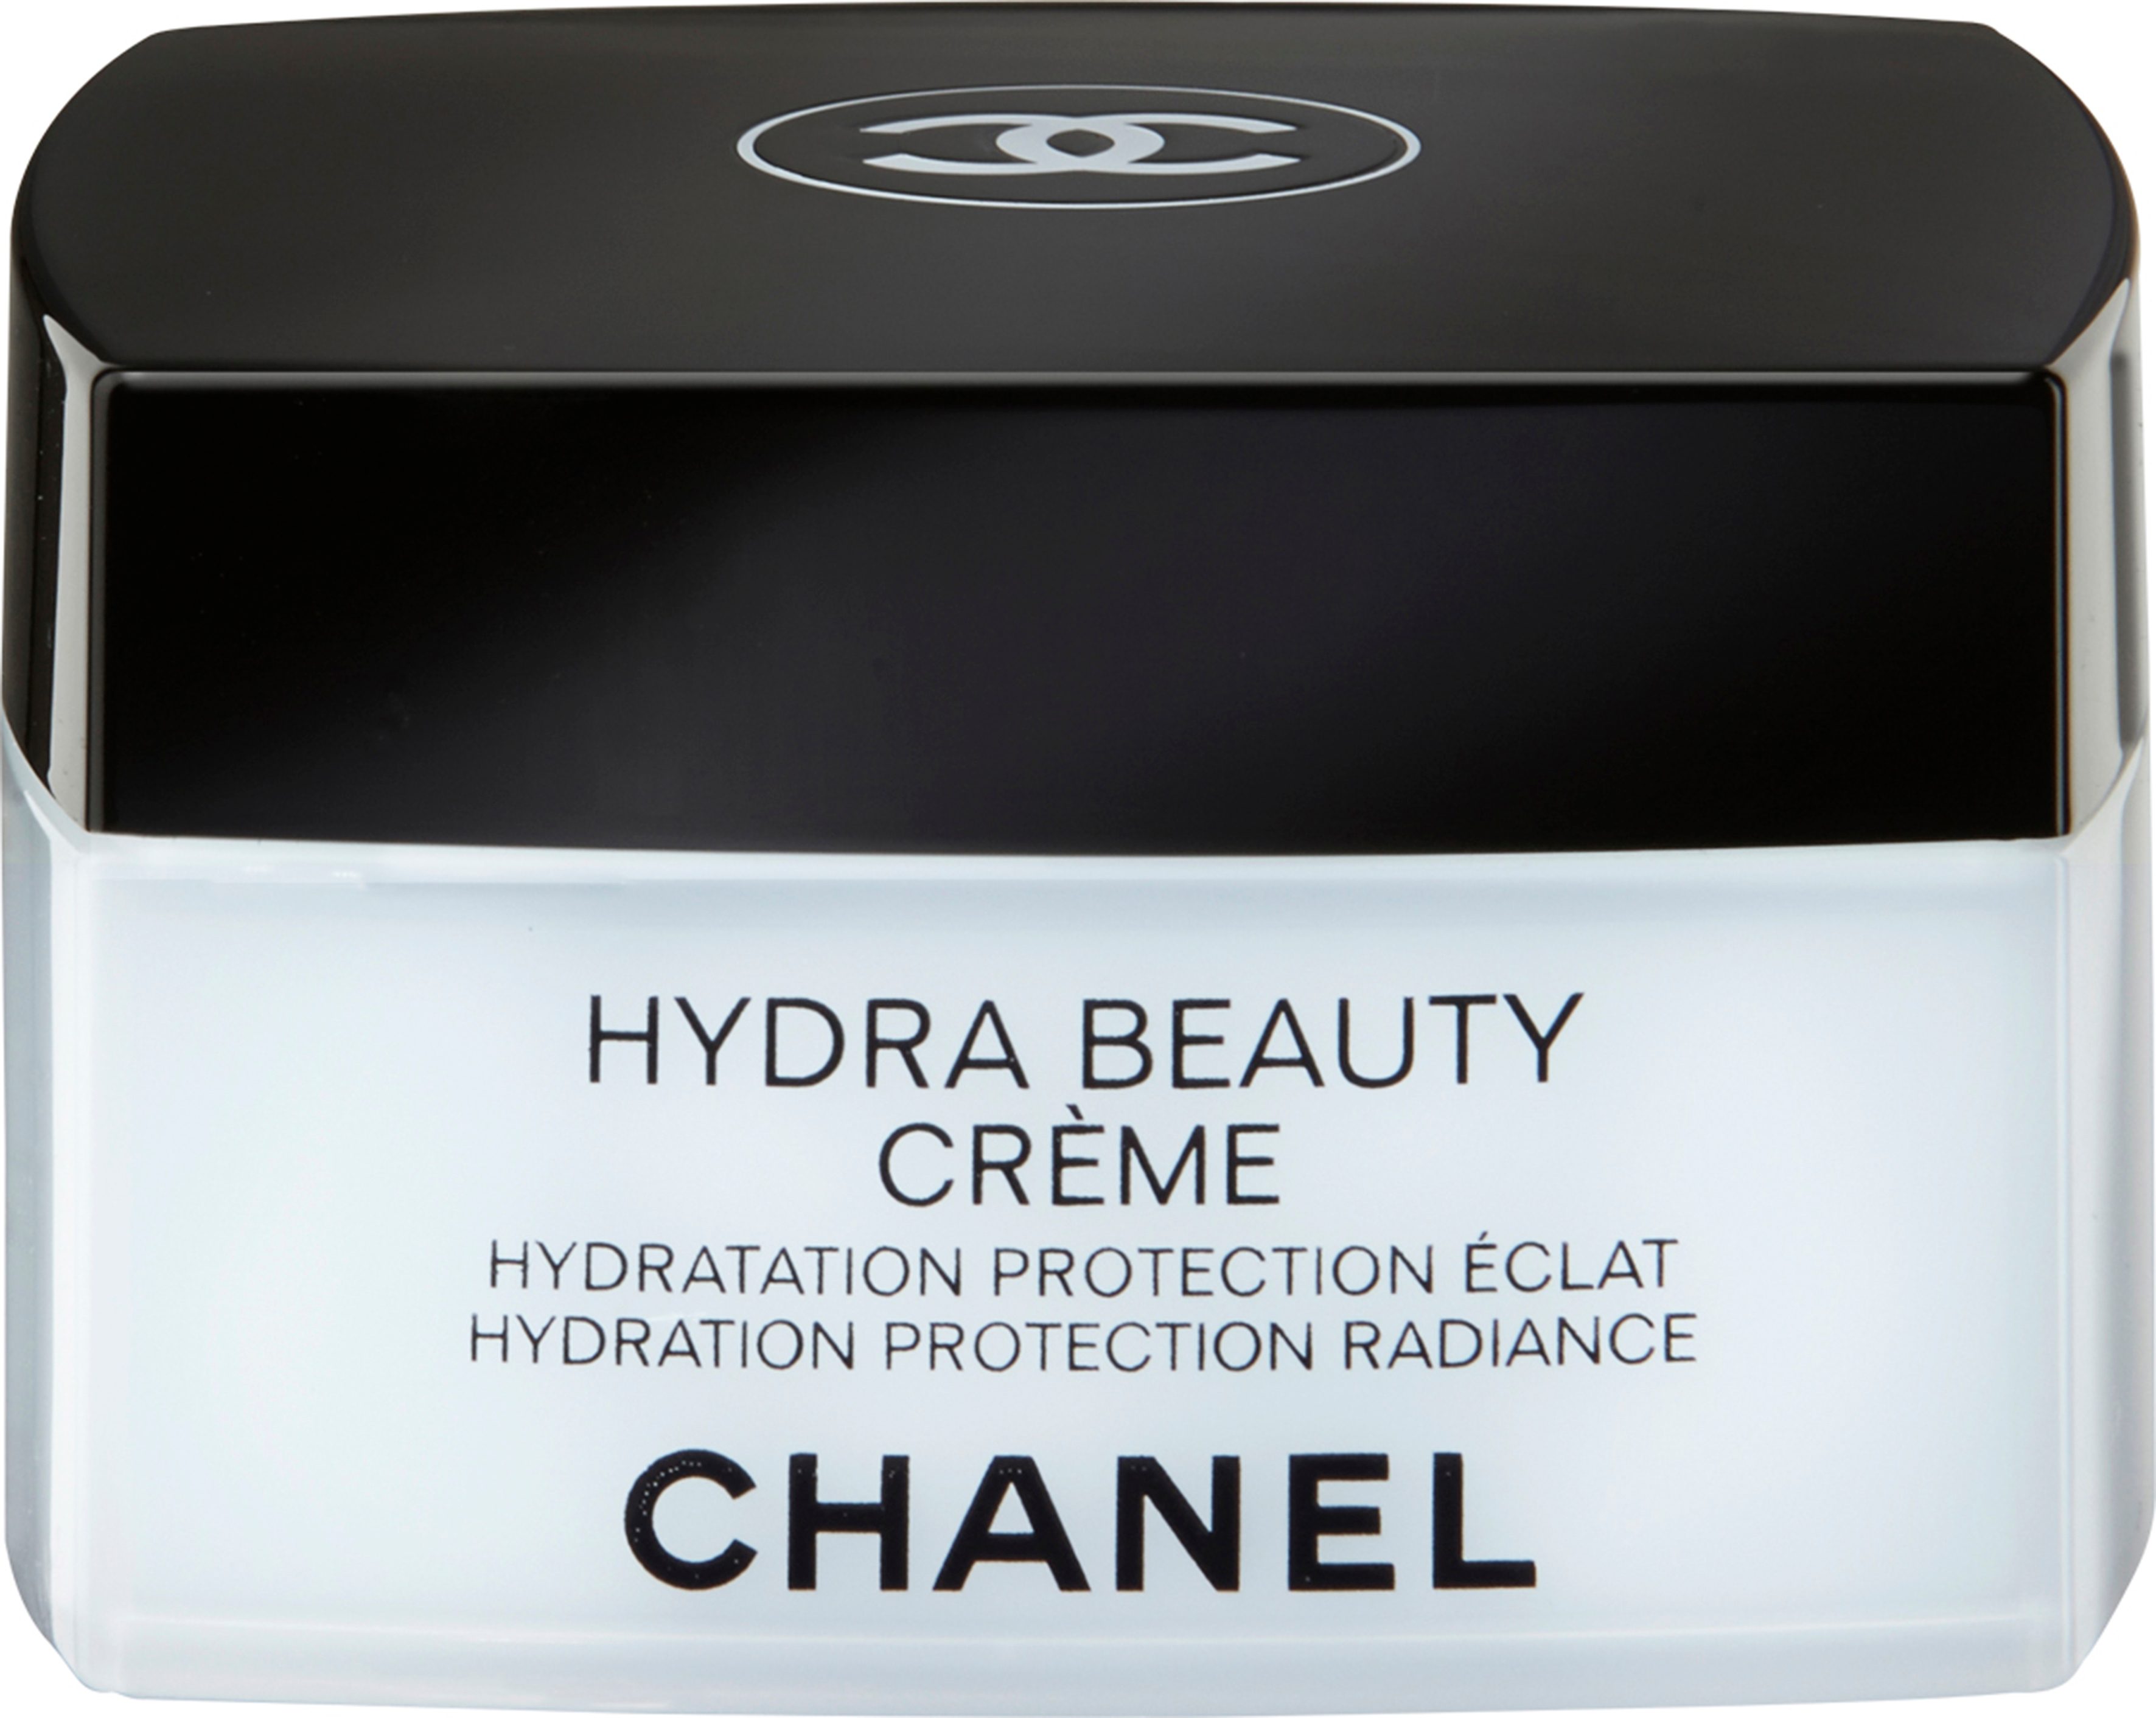 Chanel Hydra Beauty Crème gezichtscrème